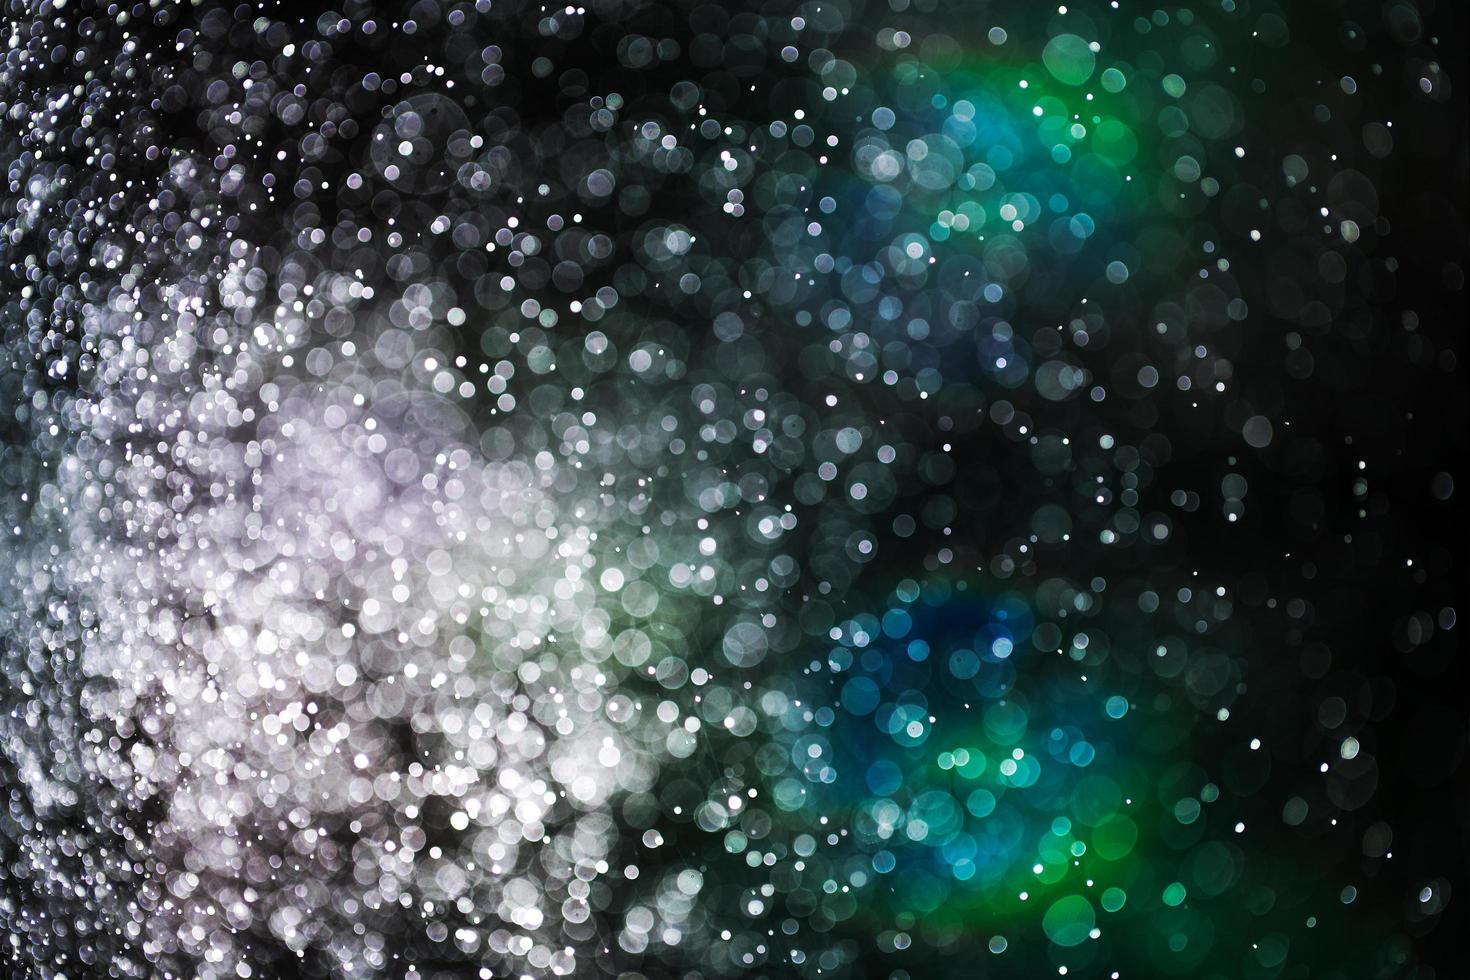 sfondo astratto da spruzzi d'acqua, simile a una stella o una galassia usando come sfondo foto